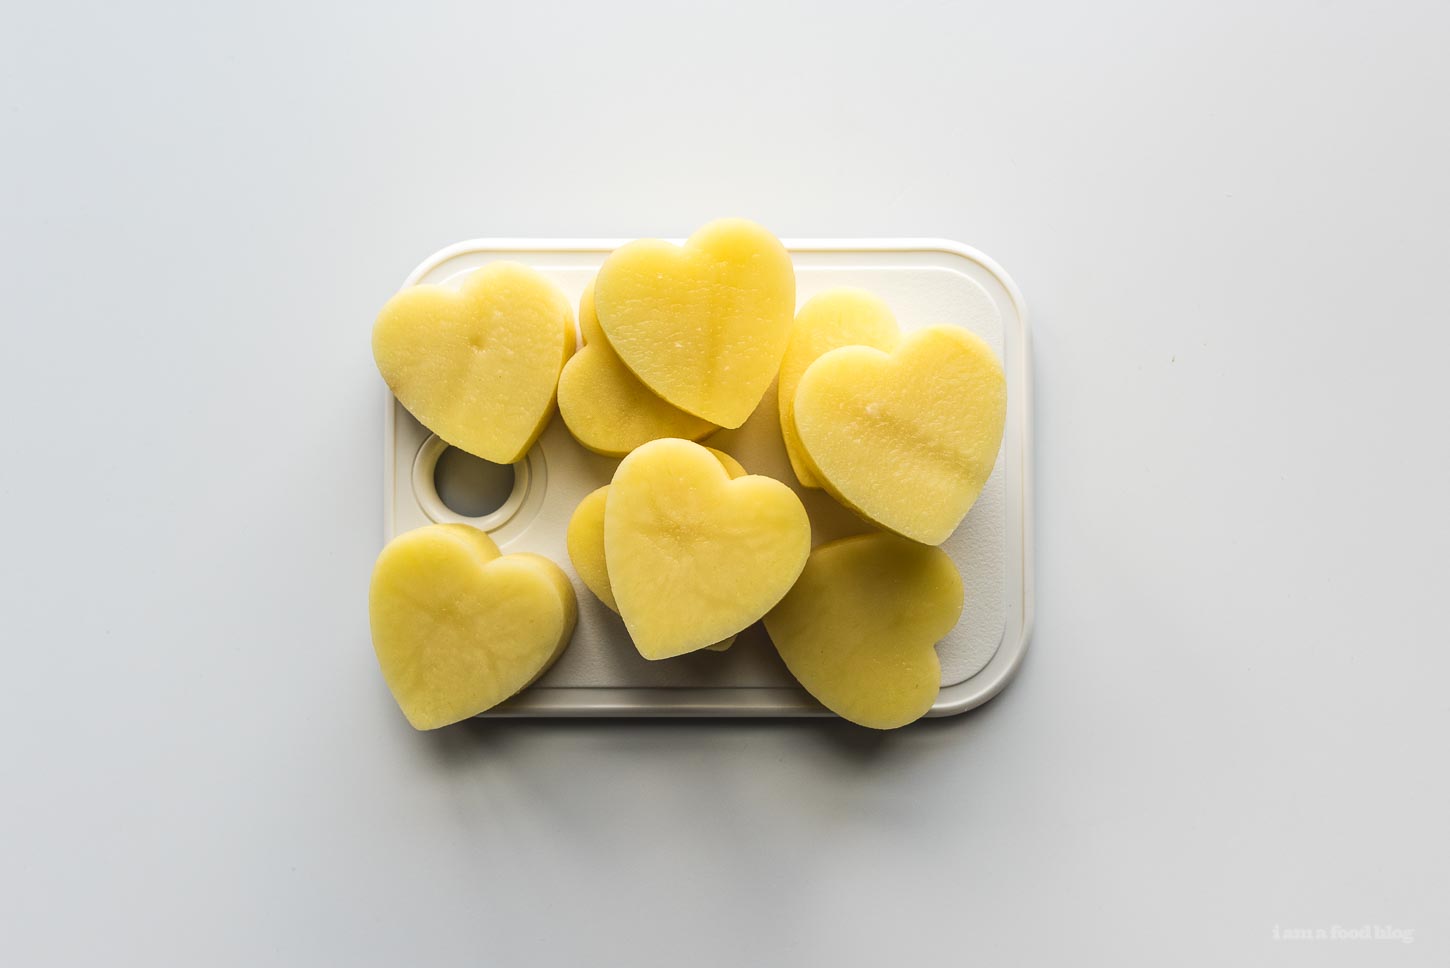 How to Make Heart Shaped Roasted Potatoes | www.iamafoodblog.com